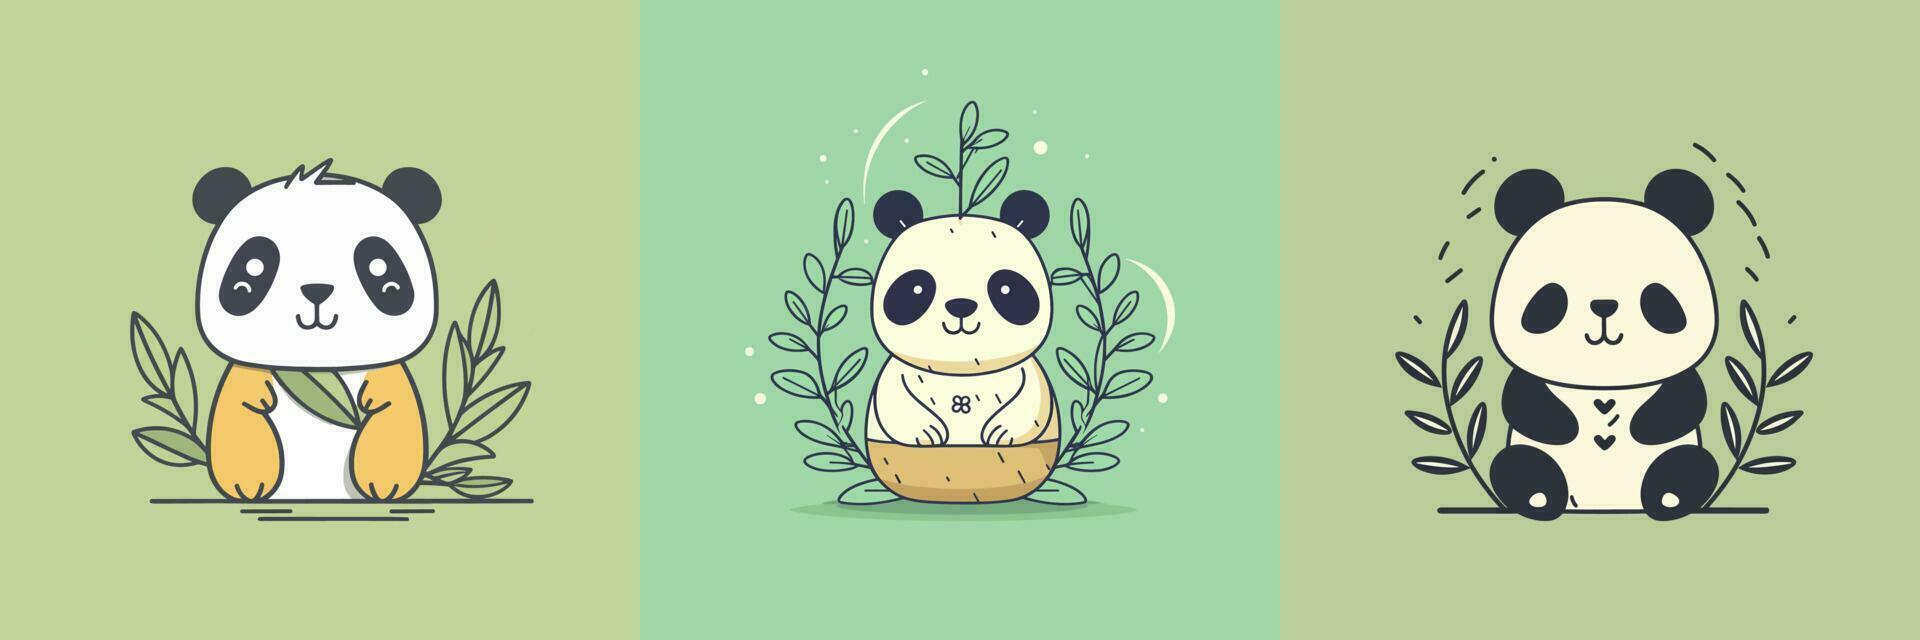 Cute kawaii panda cartoon illustration vector